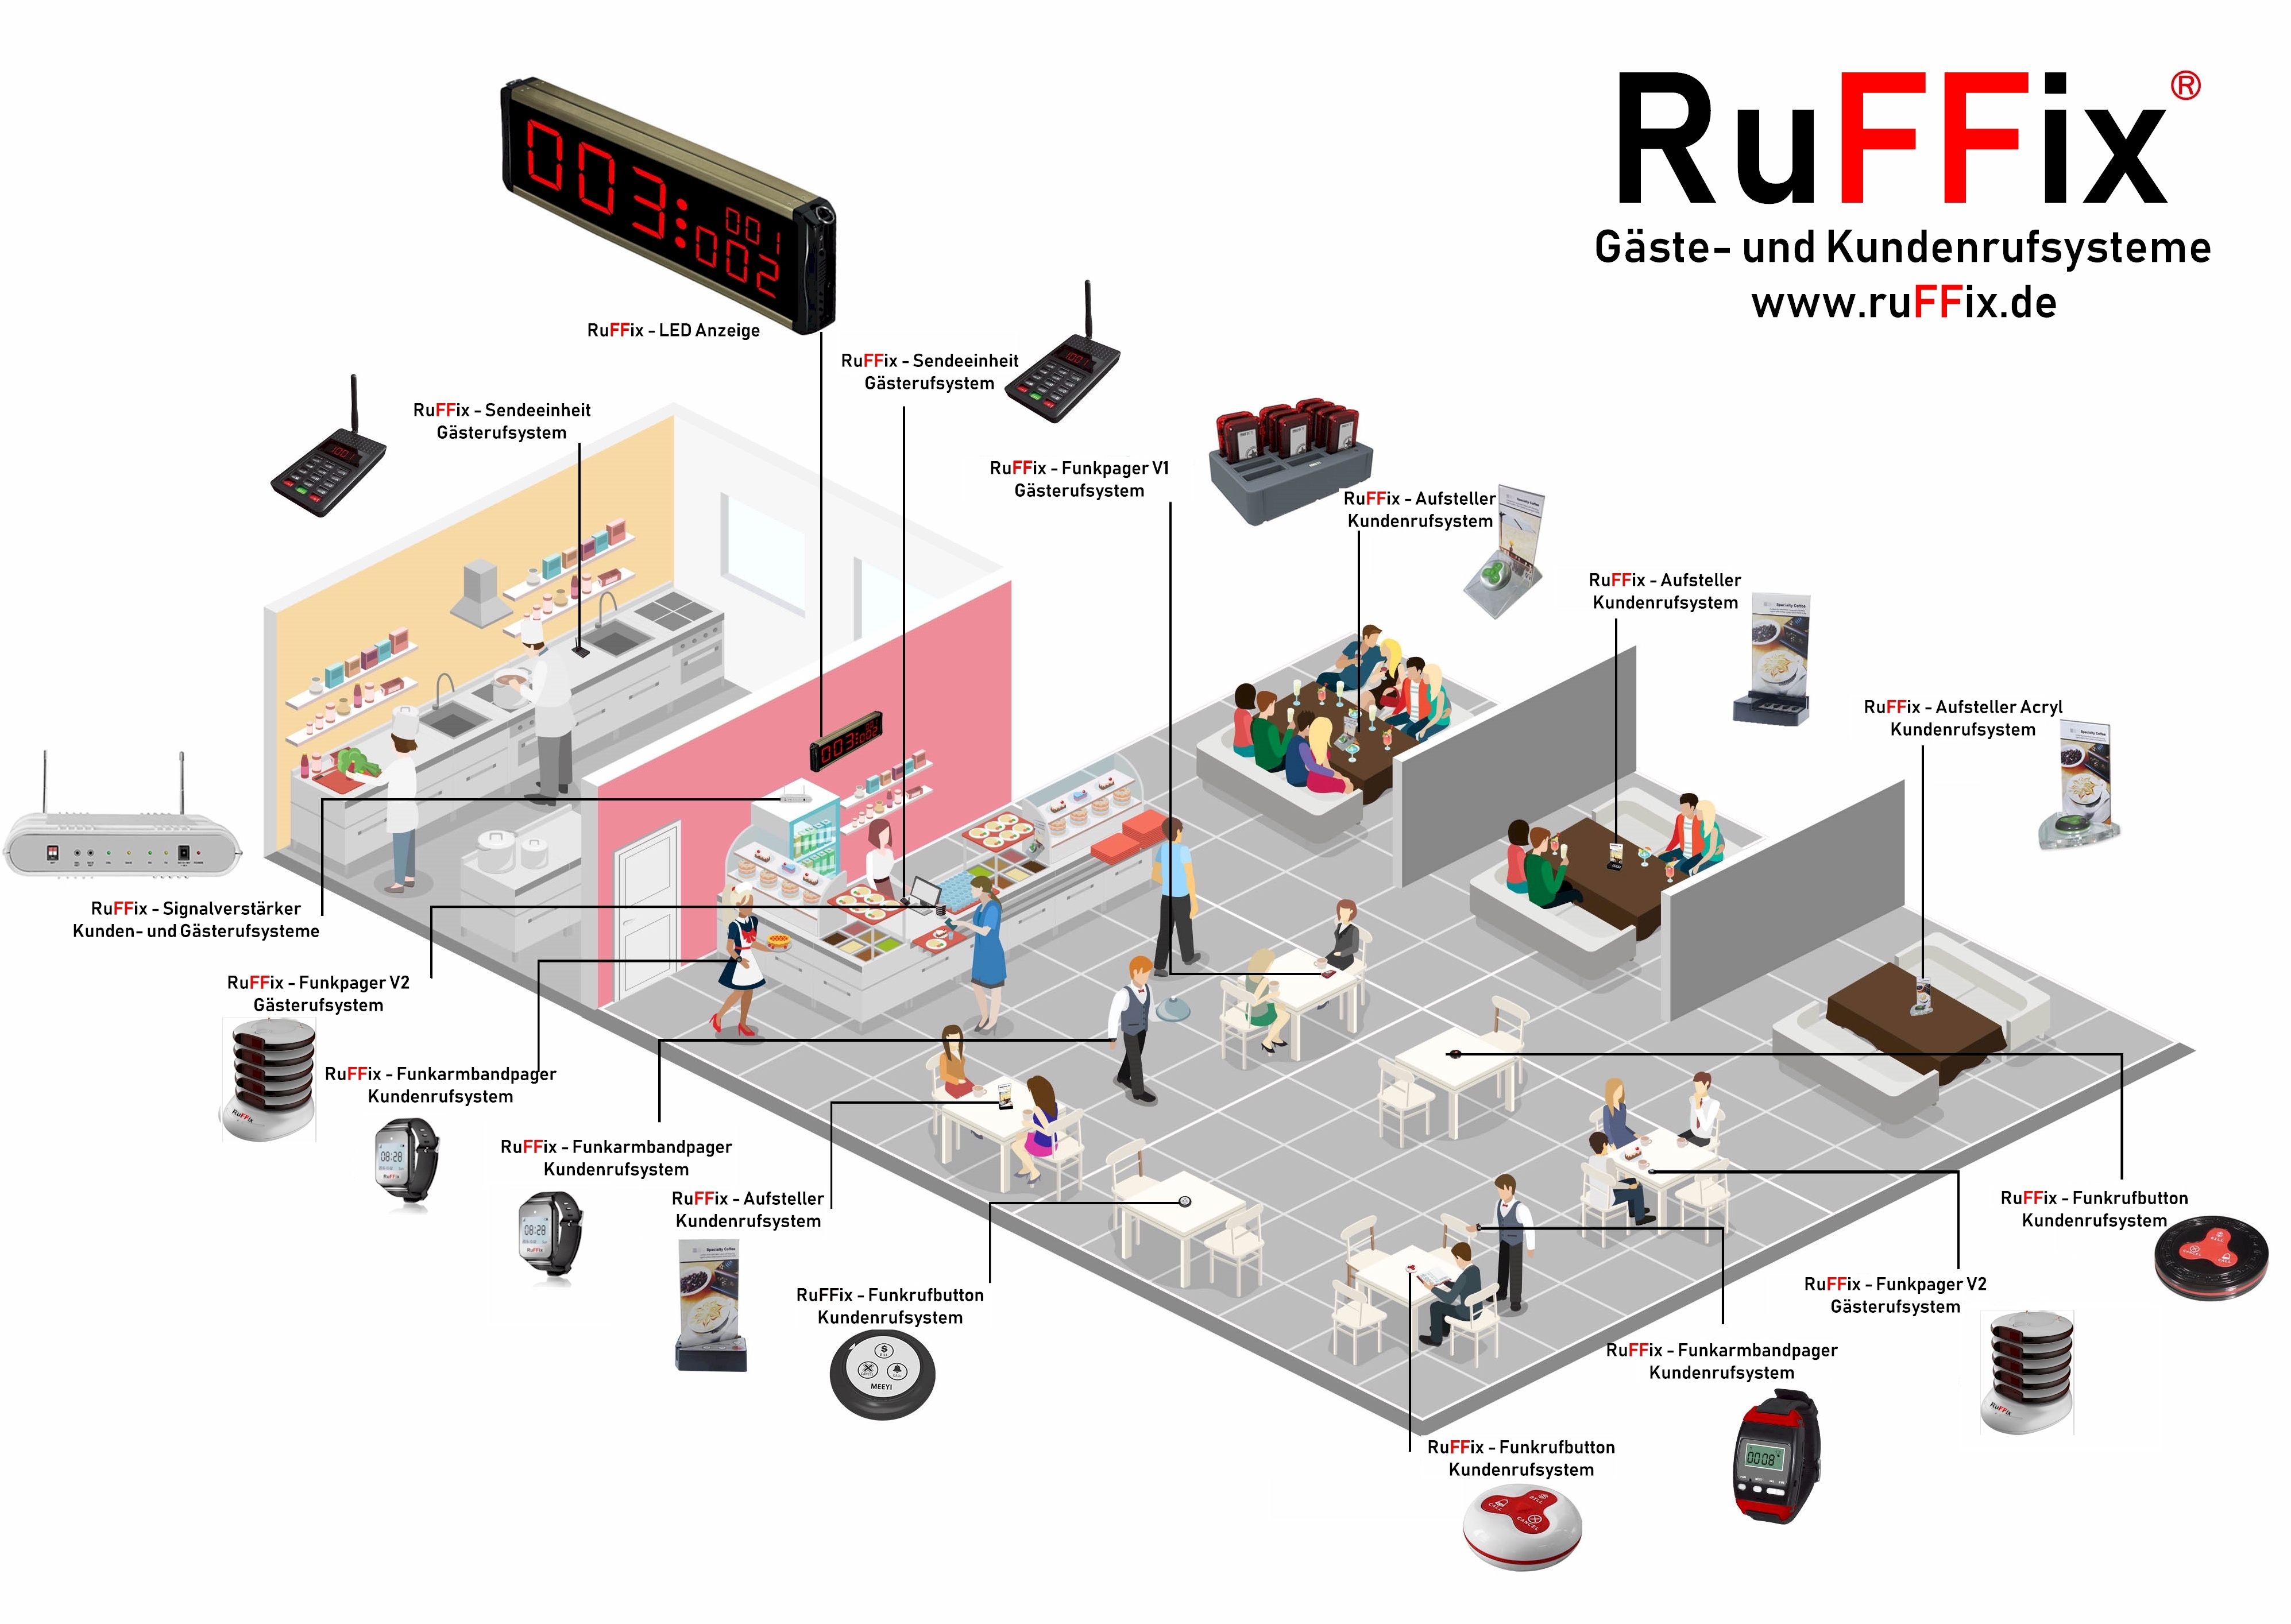 Aufsteller RuFFix ® das OriginalKundenruf System1x Funkrufbutton Rot 